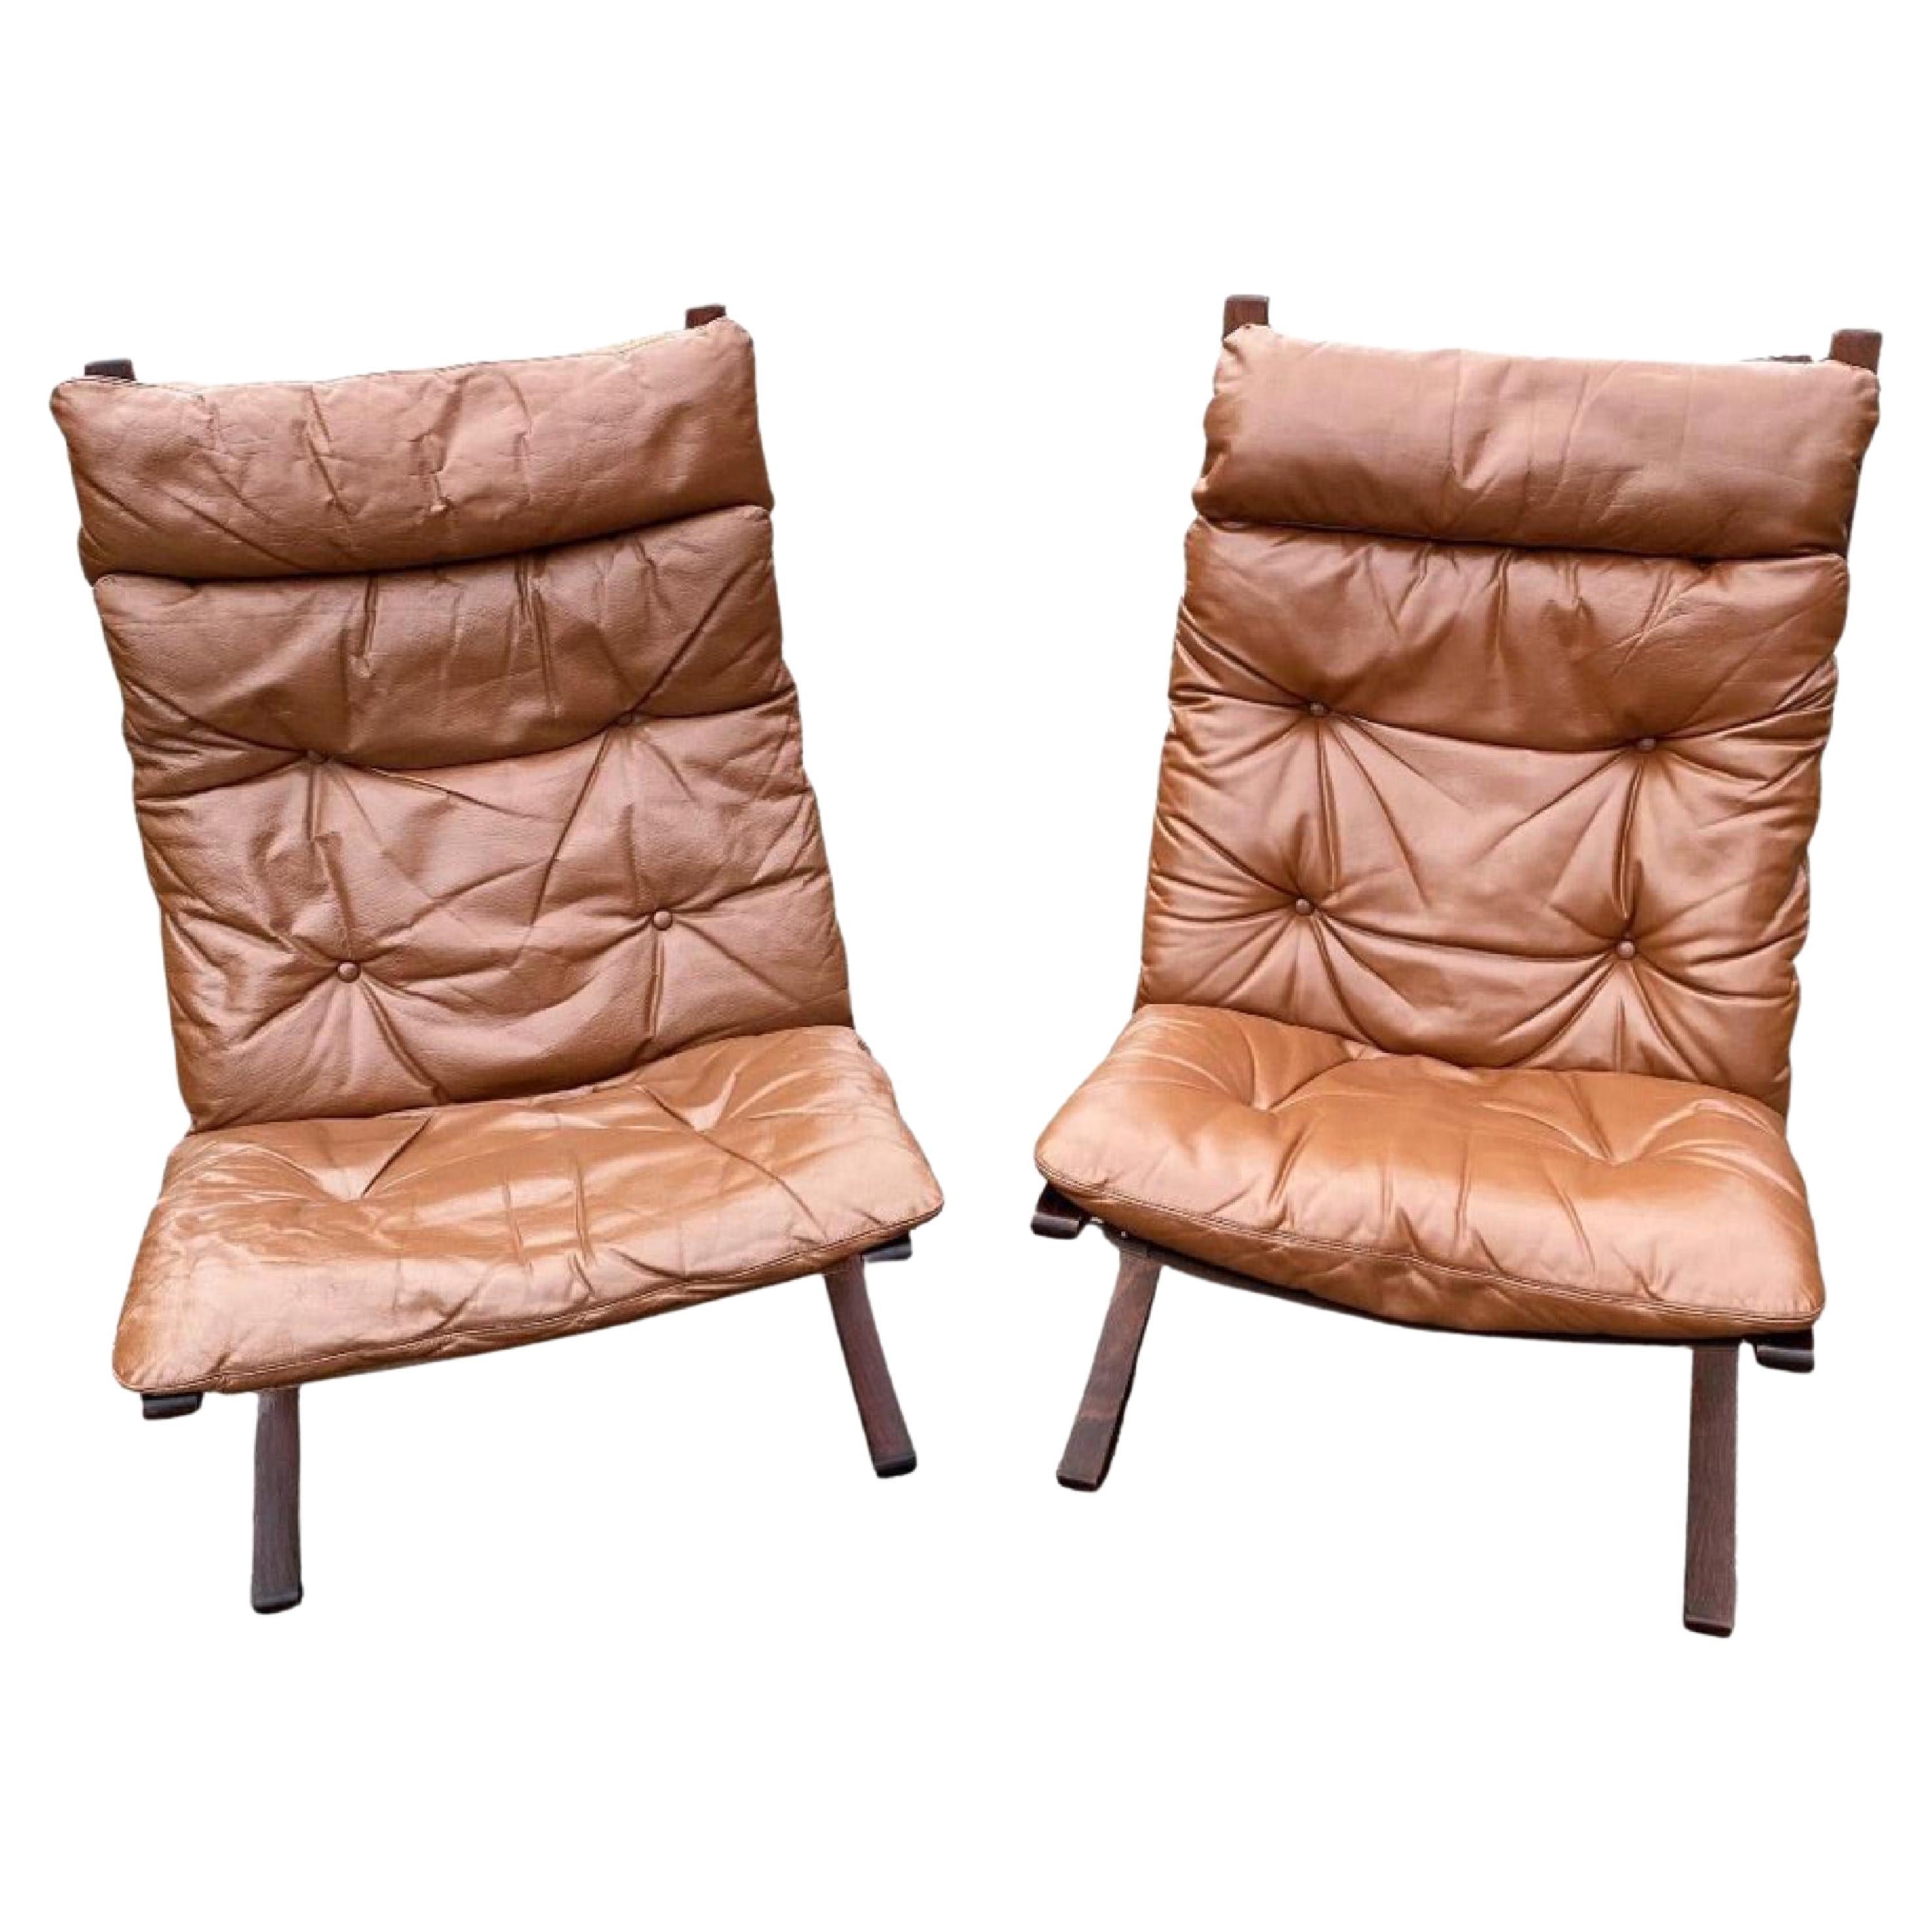 Set of Ingmar Relling "Siesta" lounge chairs